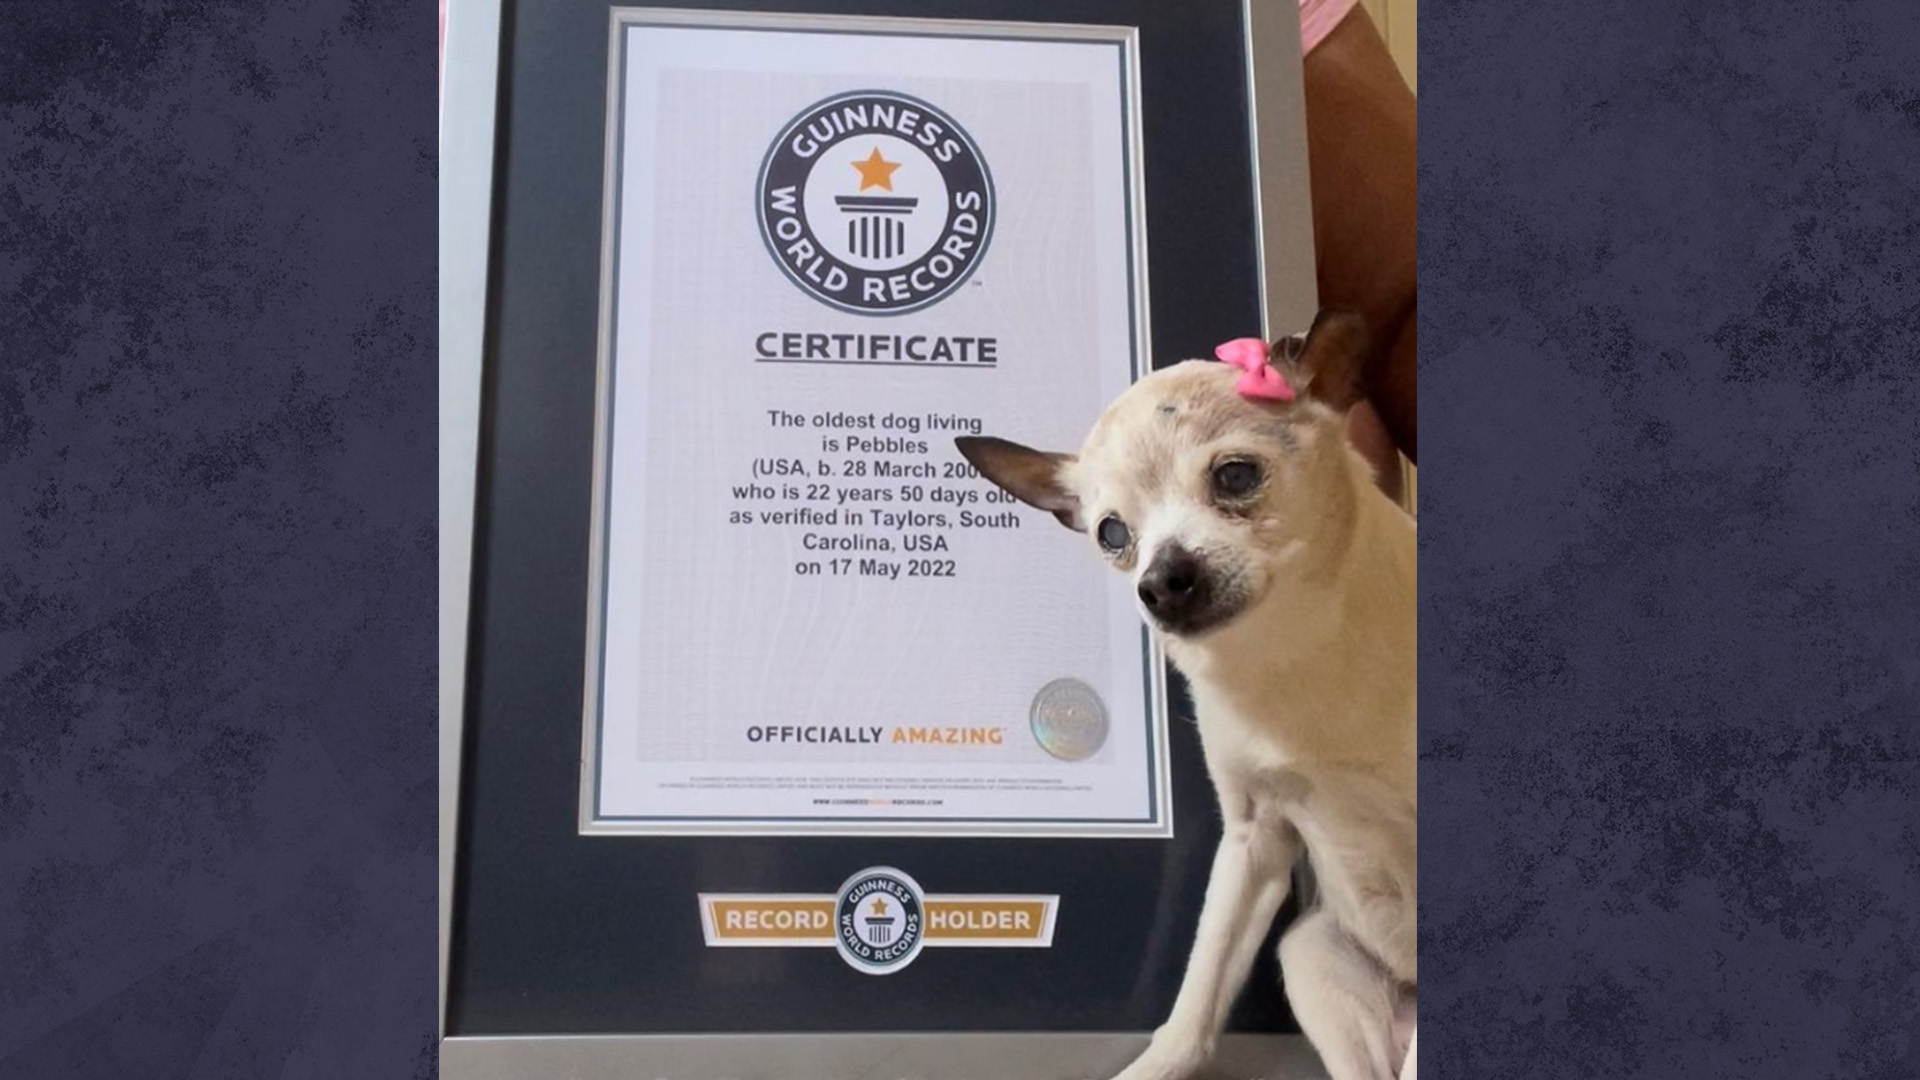 Pebbles a détrôné TobyKeith, un chien de 21 ans qui détenait le record avant que l'existence de Pebbles ne soit découverte. Elle est née le 28 mars 2000 à Long Island, dans l’État de New York.